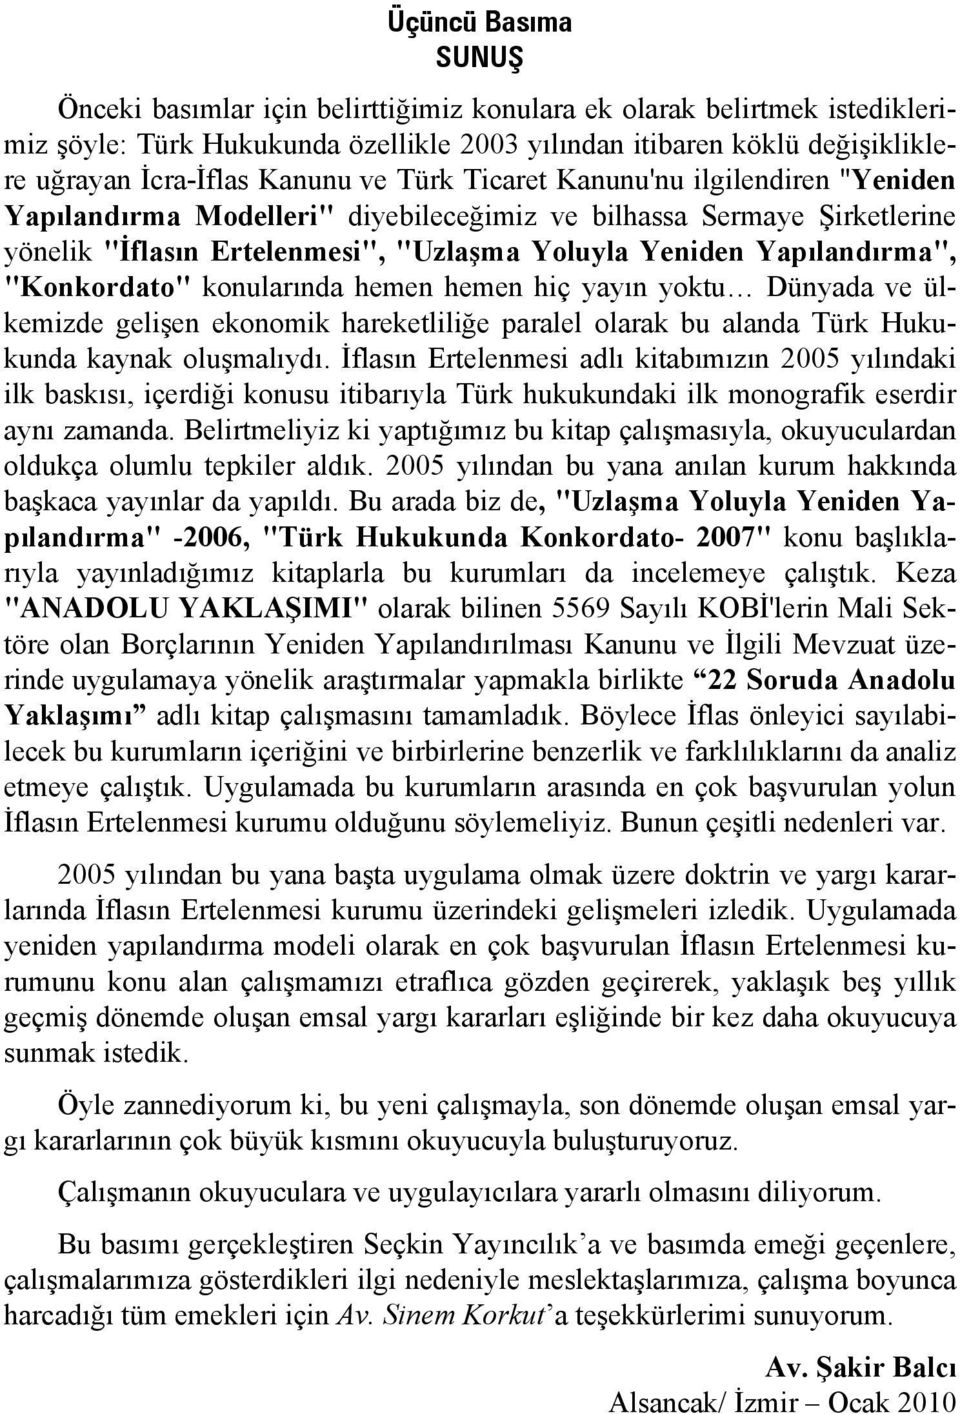 "Konkordato" konularında hemen hemen hiç yayın yoktu Dünyada ve ülkemizde gelişen ekonomik hareketliliğe paralel olarak bu alanda Türk Hukukunda kaynak oluşmalıydı.